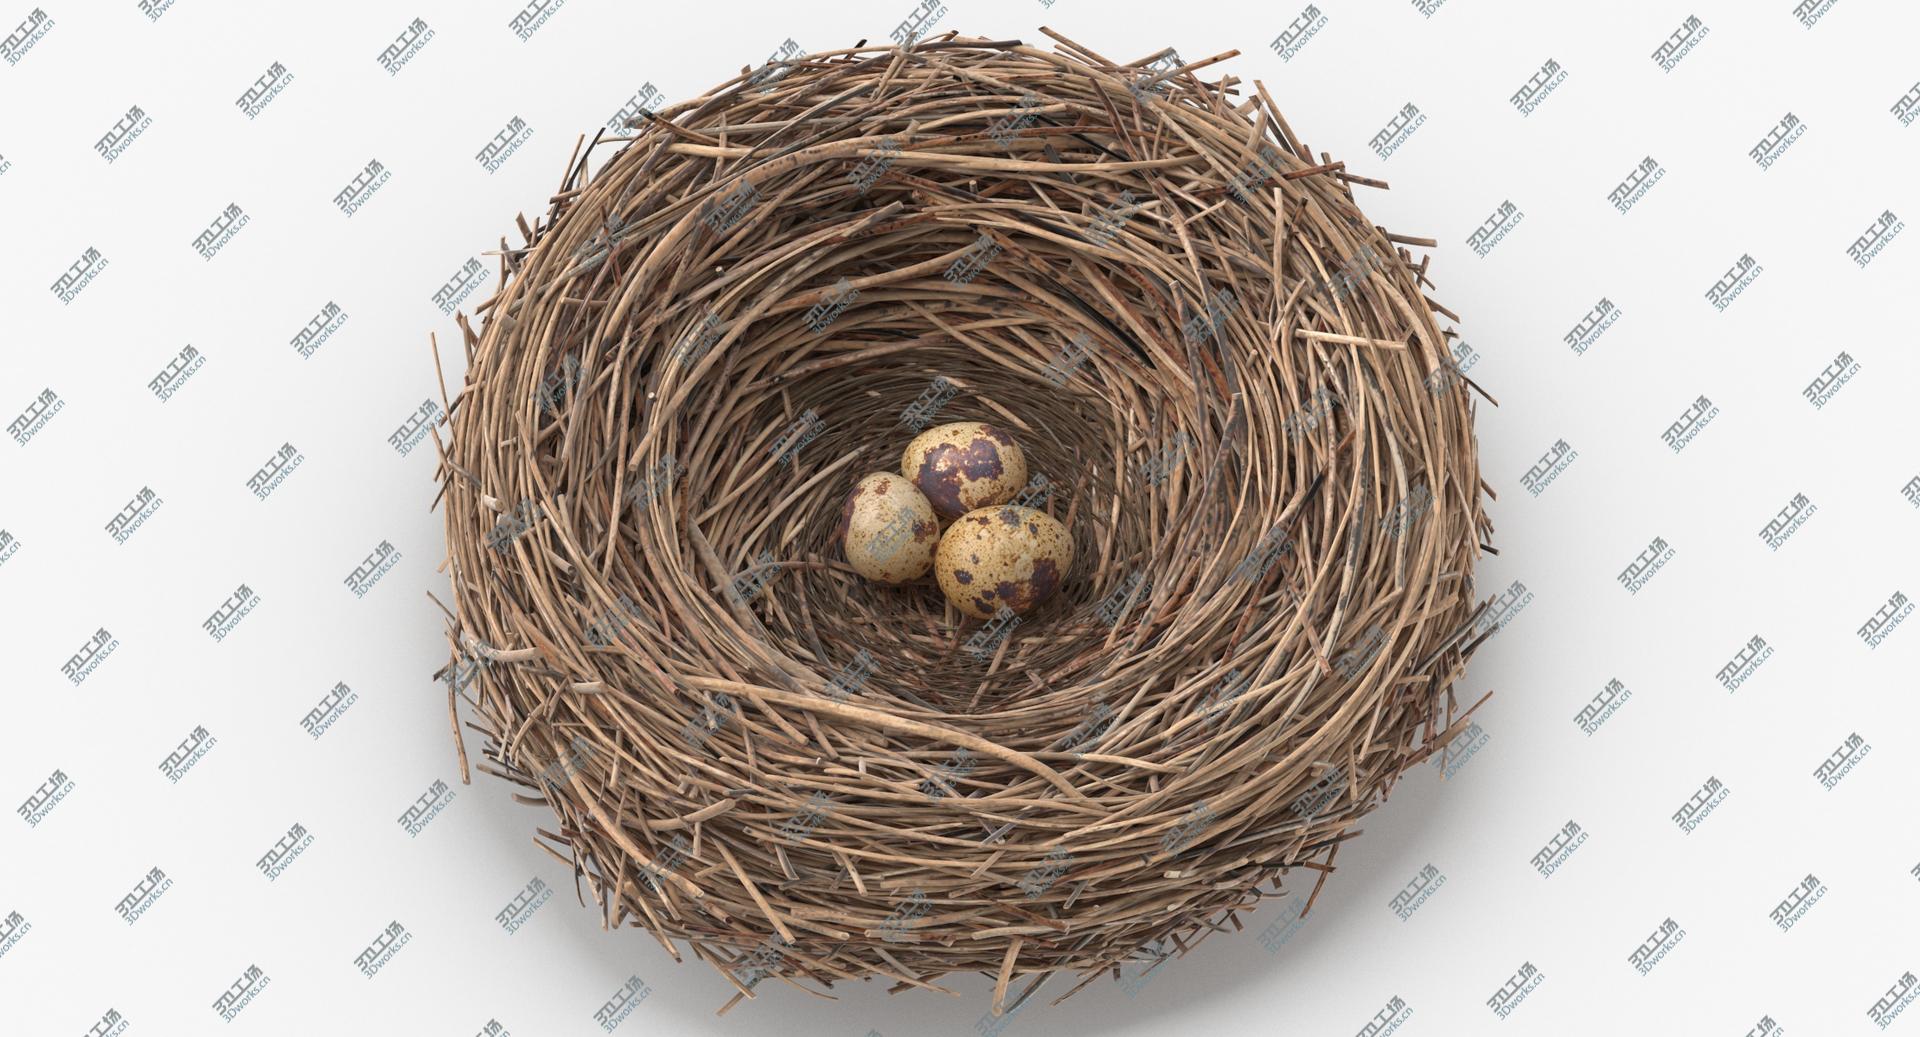 images/goods_img/2021040162/3D Bird Nest 03 With Quail Eggs model/1.jpg